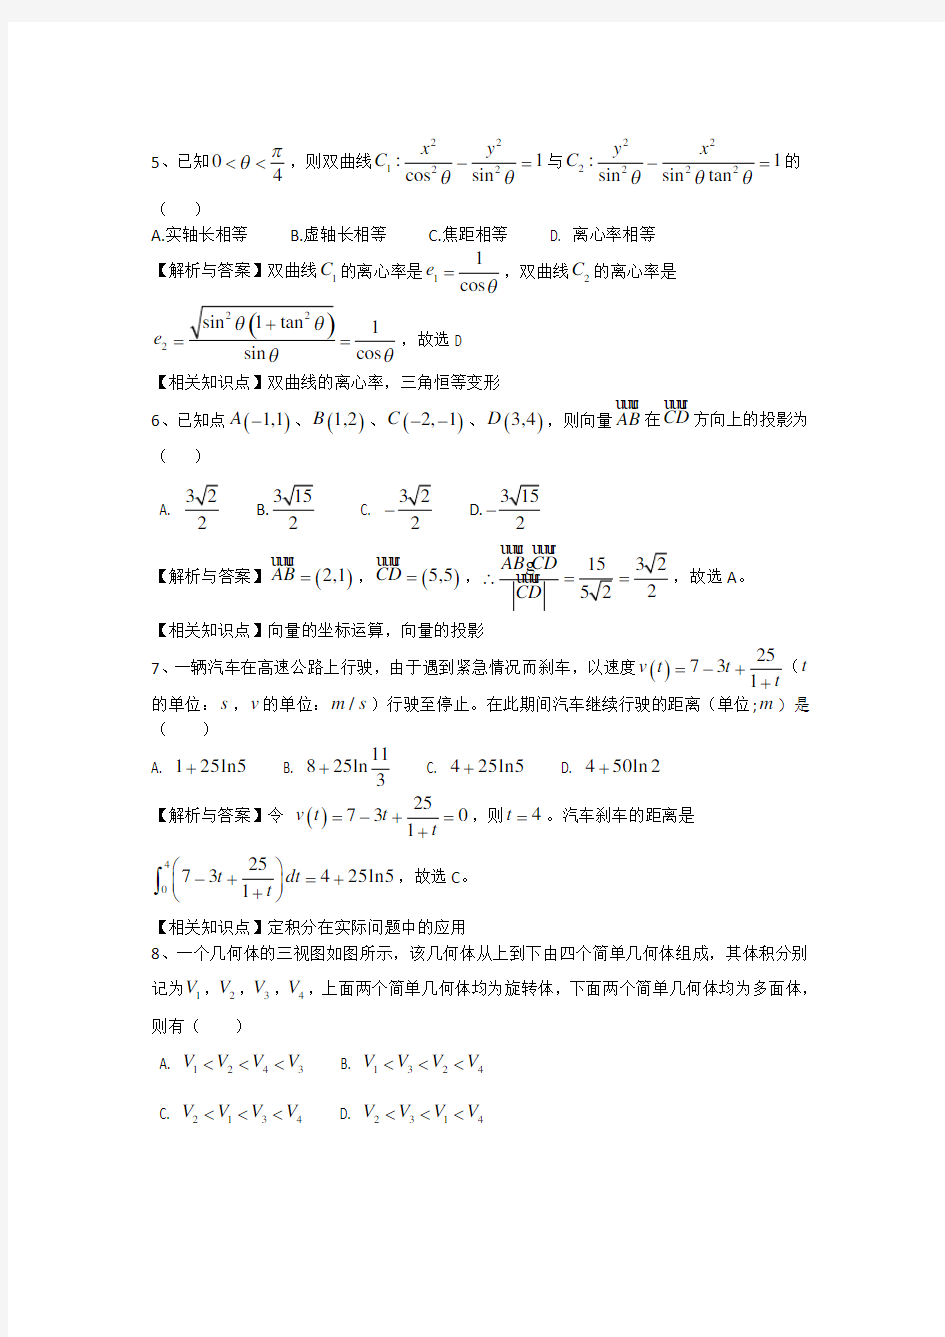 2013年高考真题——理科数学(湖北卷)解析版 Word版含答案